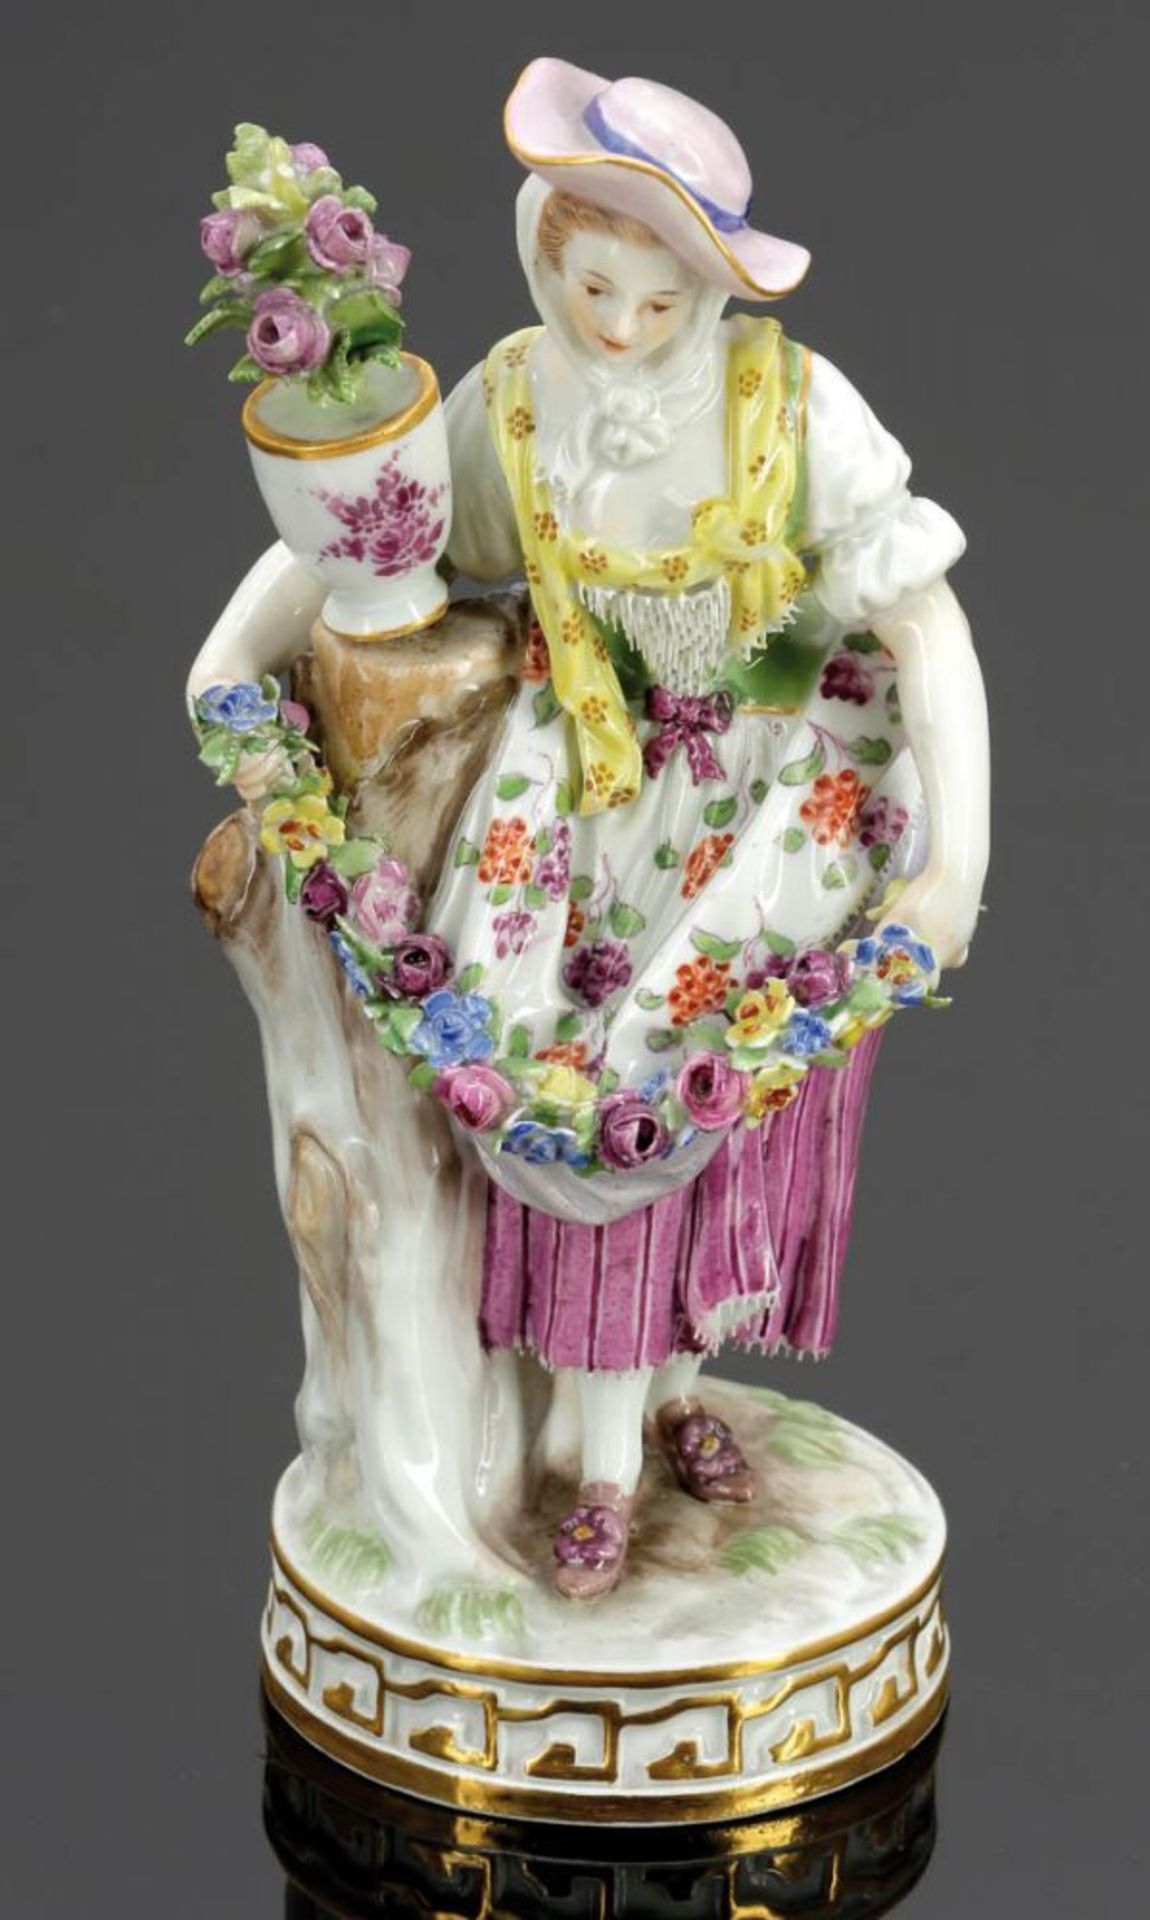 Gärtnerin mit Blumengirlande Königliche Porzellan Manufaktur, Meissen um 1850. Porzellan, weiß,